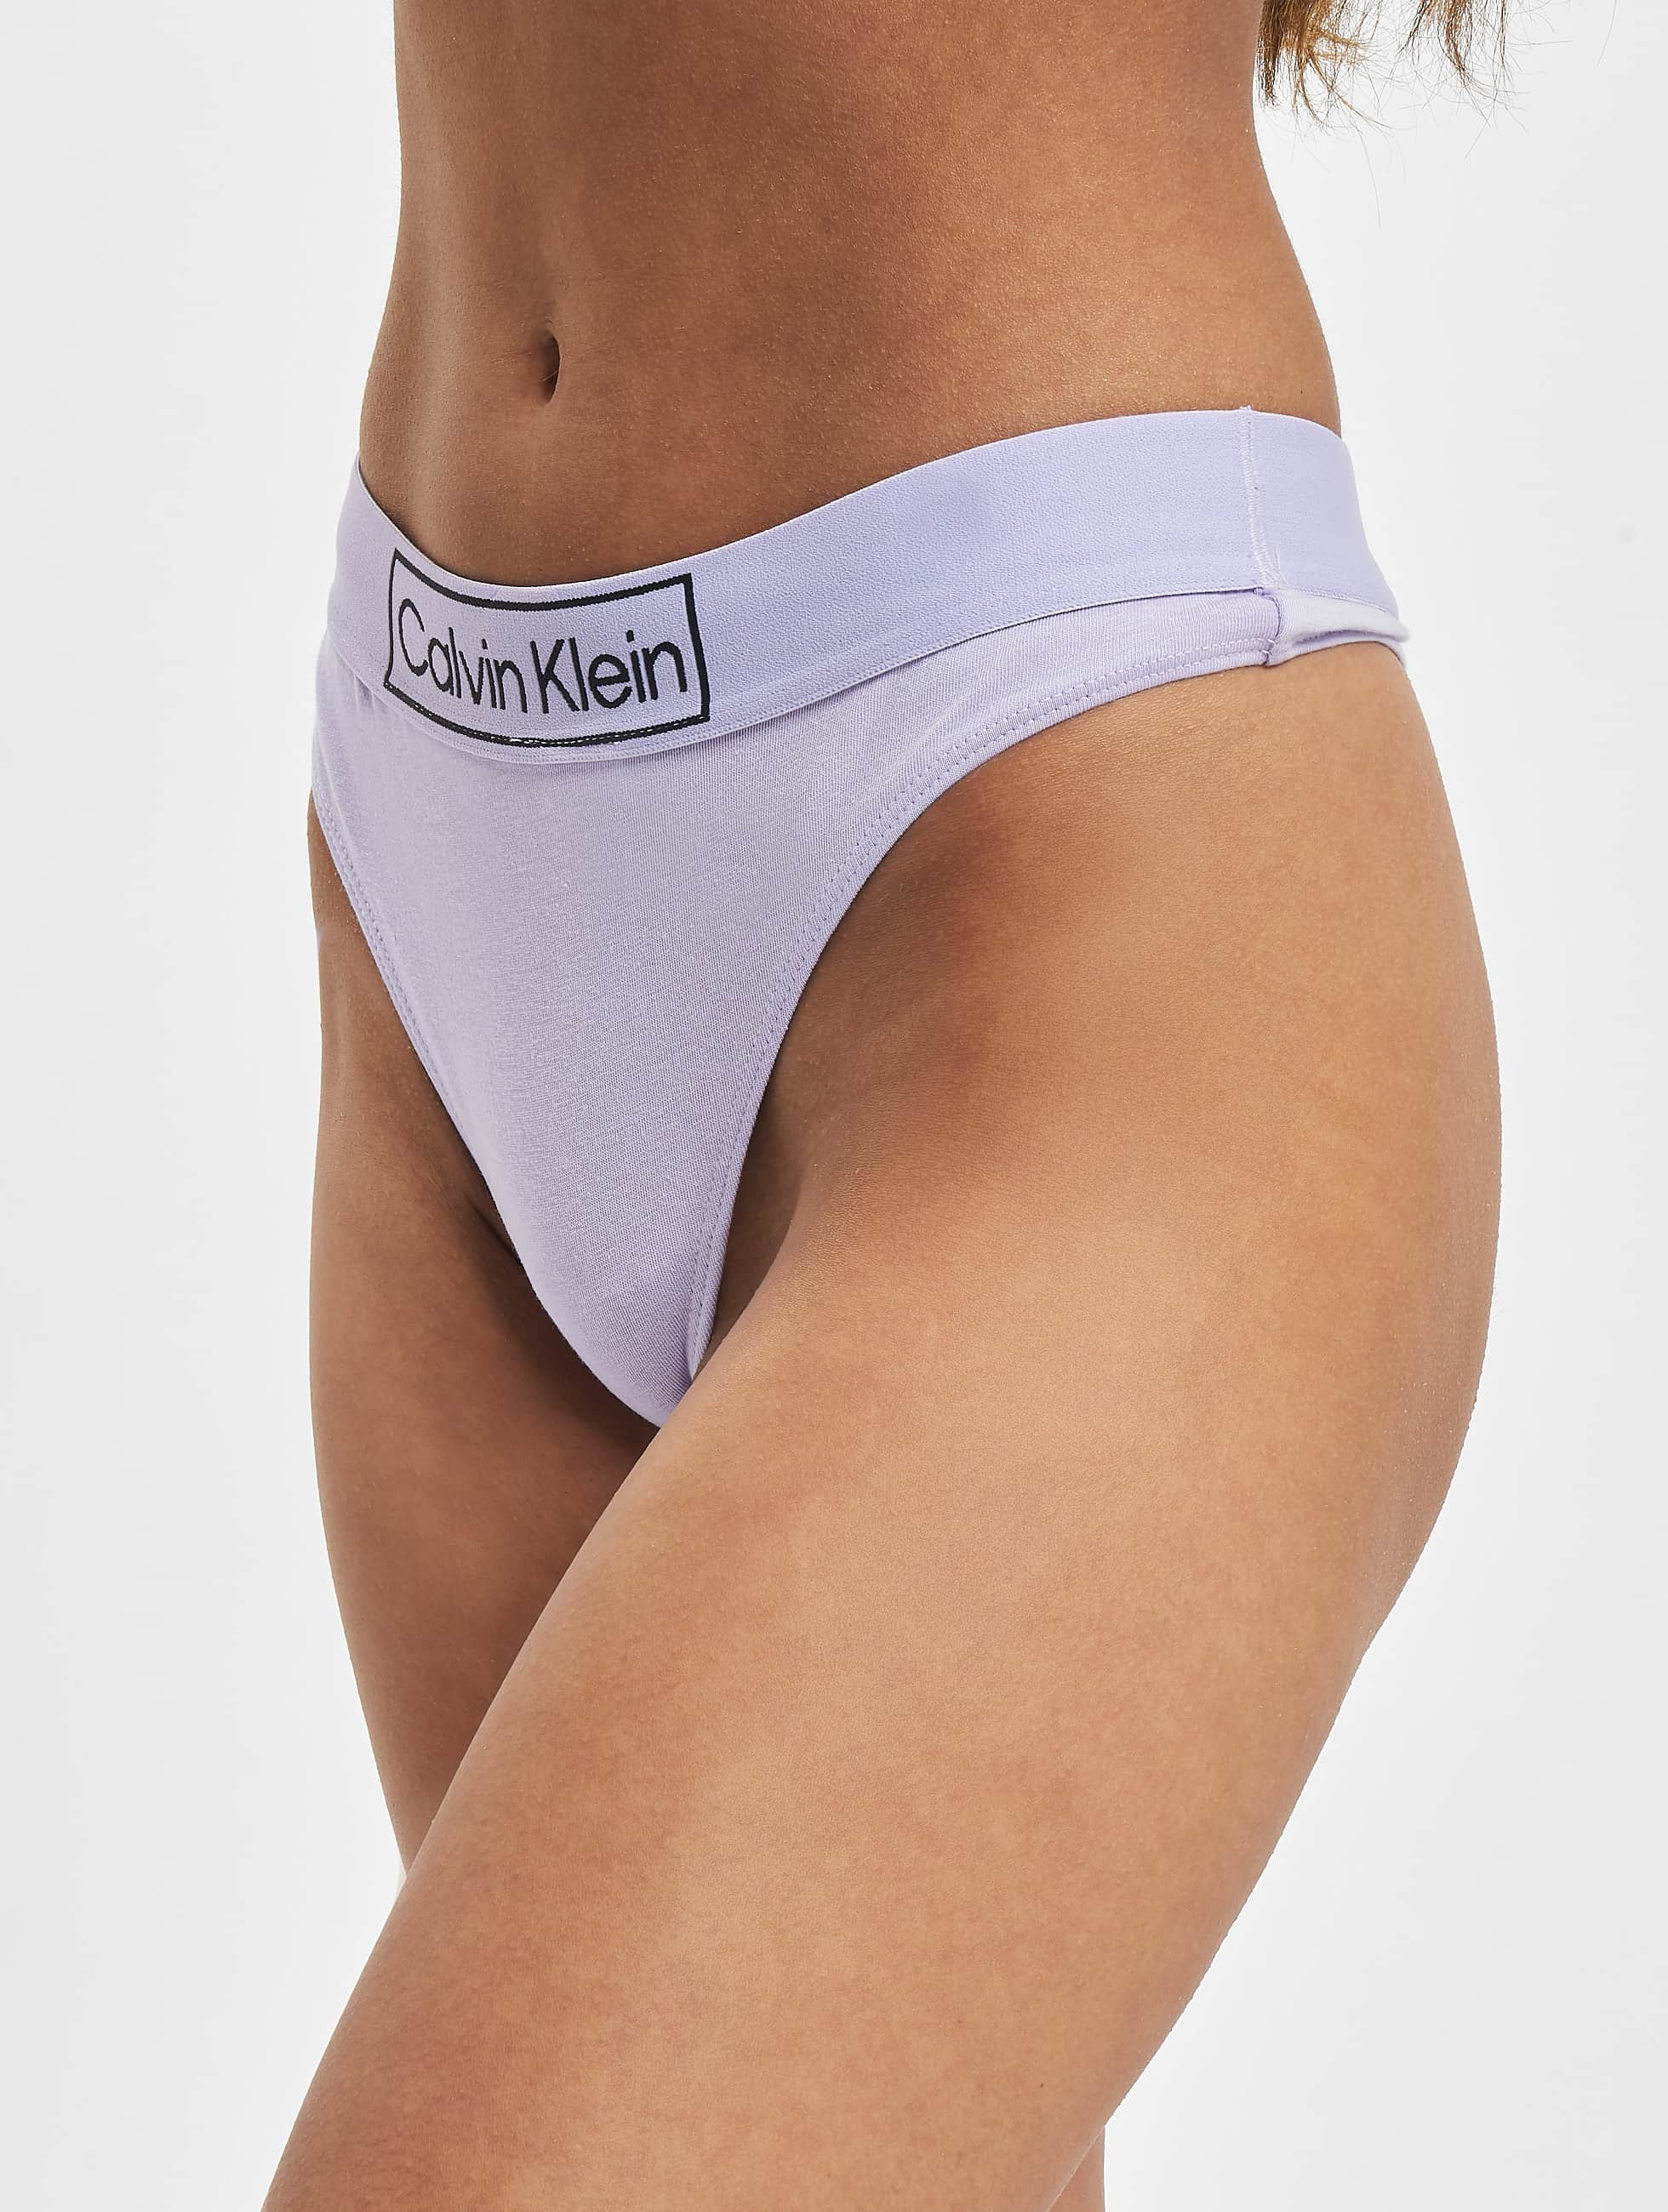 Calvin Klein Underwear / Beachwear / Underwear Underwear in purple 972479